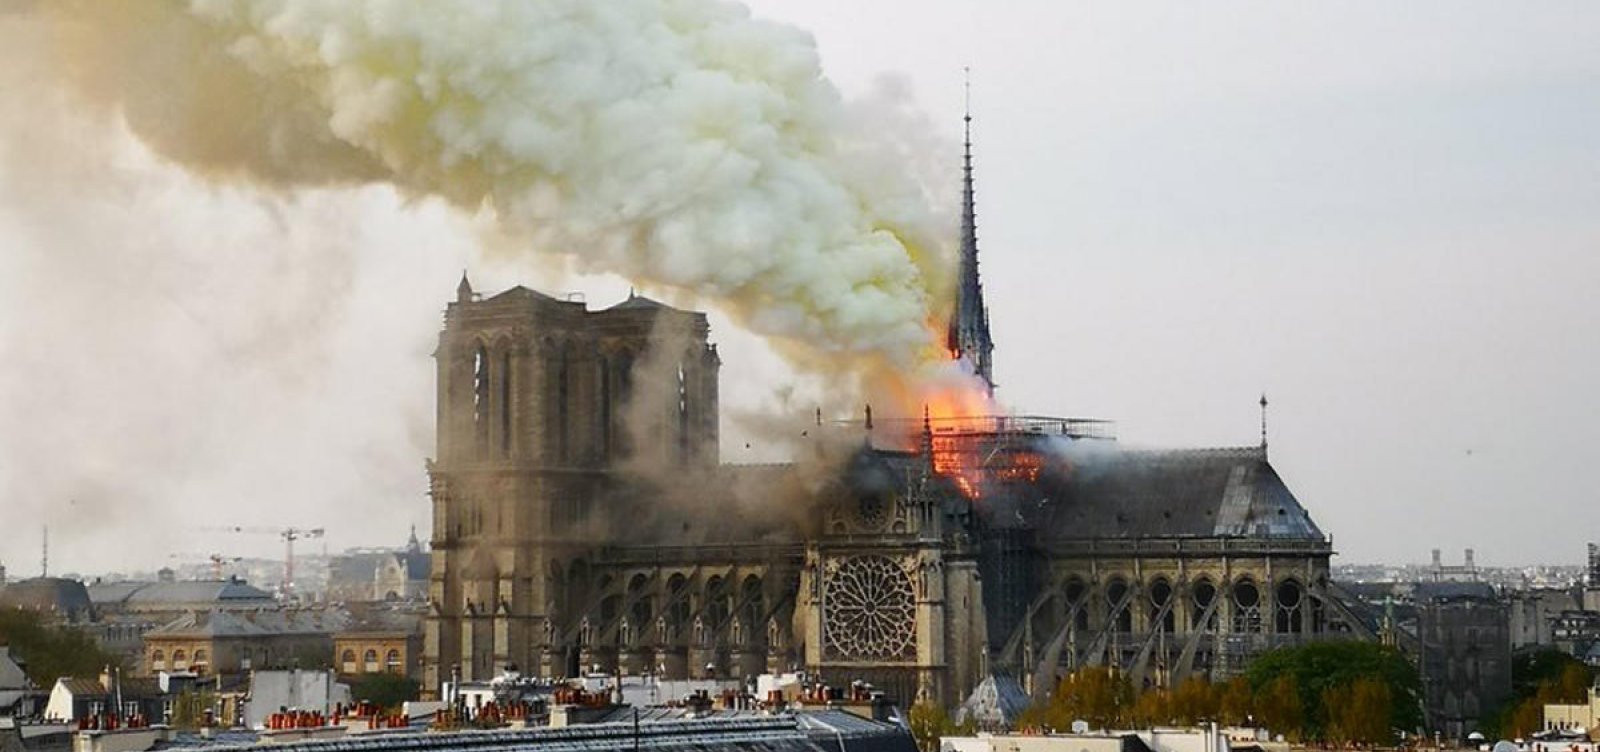 Catedral de Notre-Dame recebeu mais de 400 milhões de euros